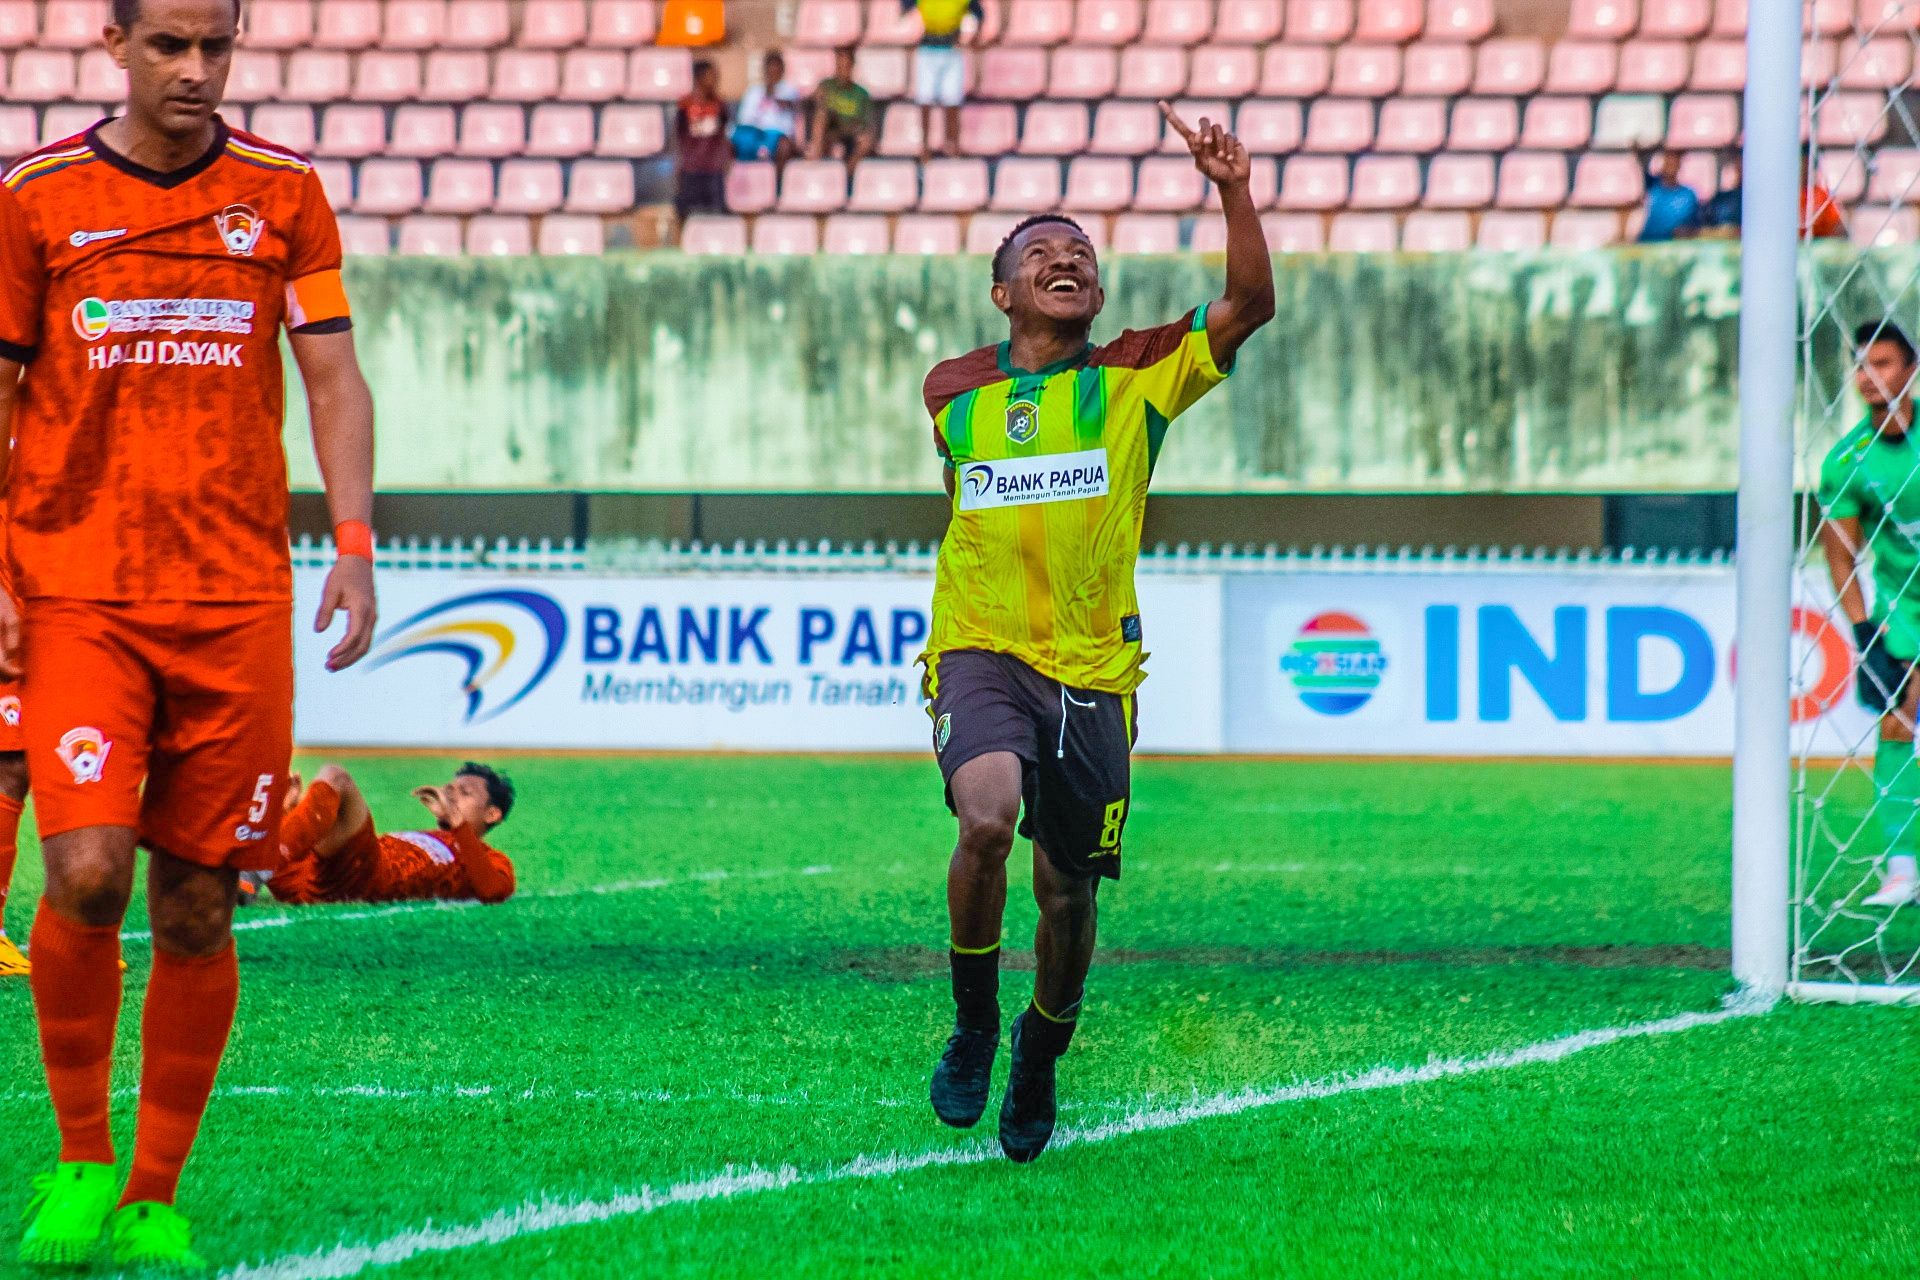 Jhosua Isir ketika menjebol gawang Kalteng Putra FC di laga perdananya bersama Persewar, Selasa kemarin di Stadion Mandala Jayapura (Portal Papua) Silas Ramandey